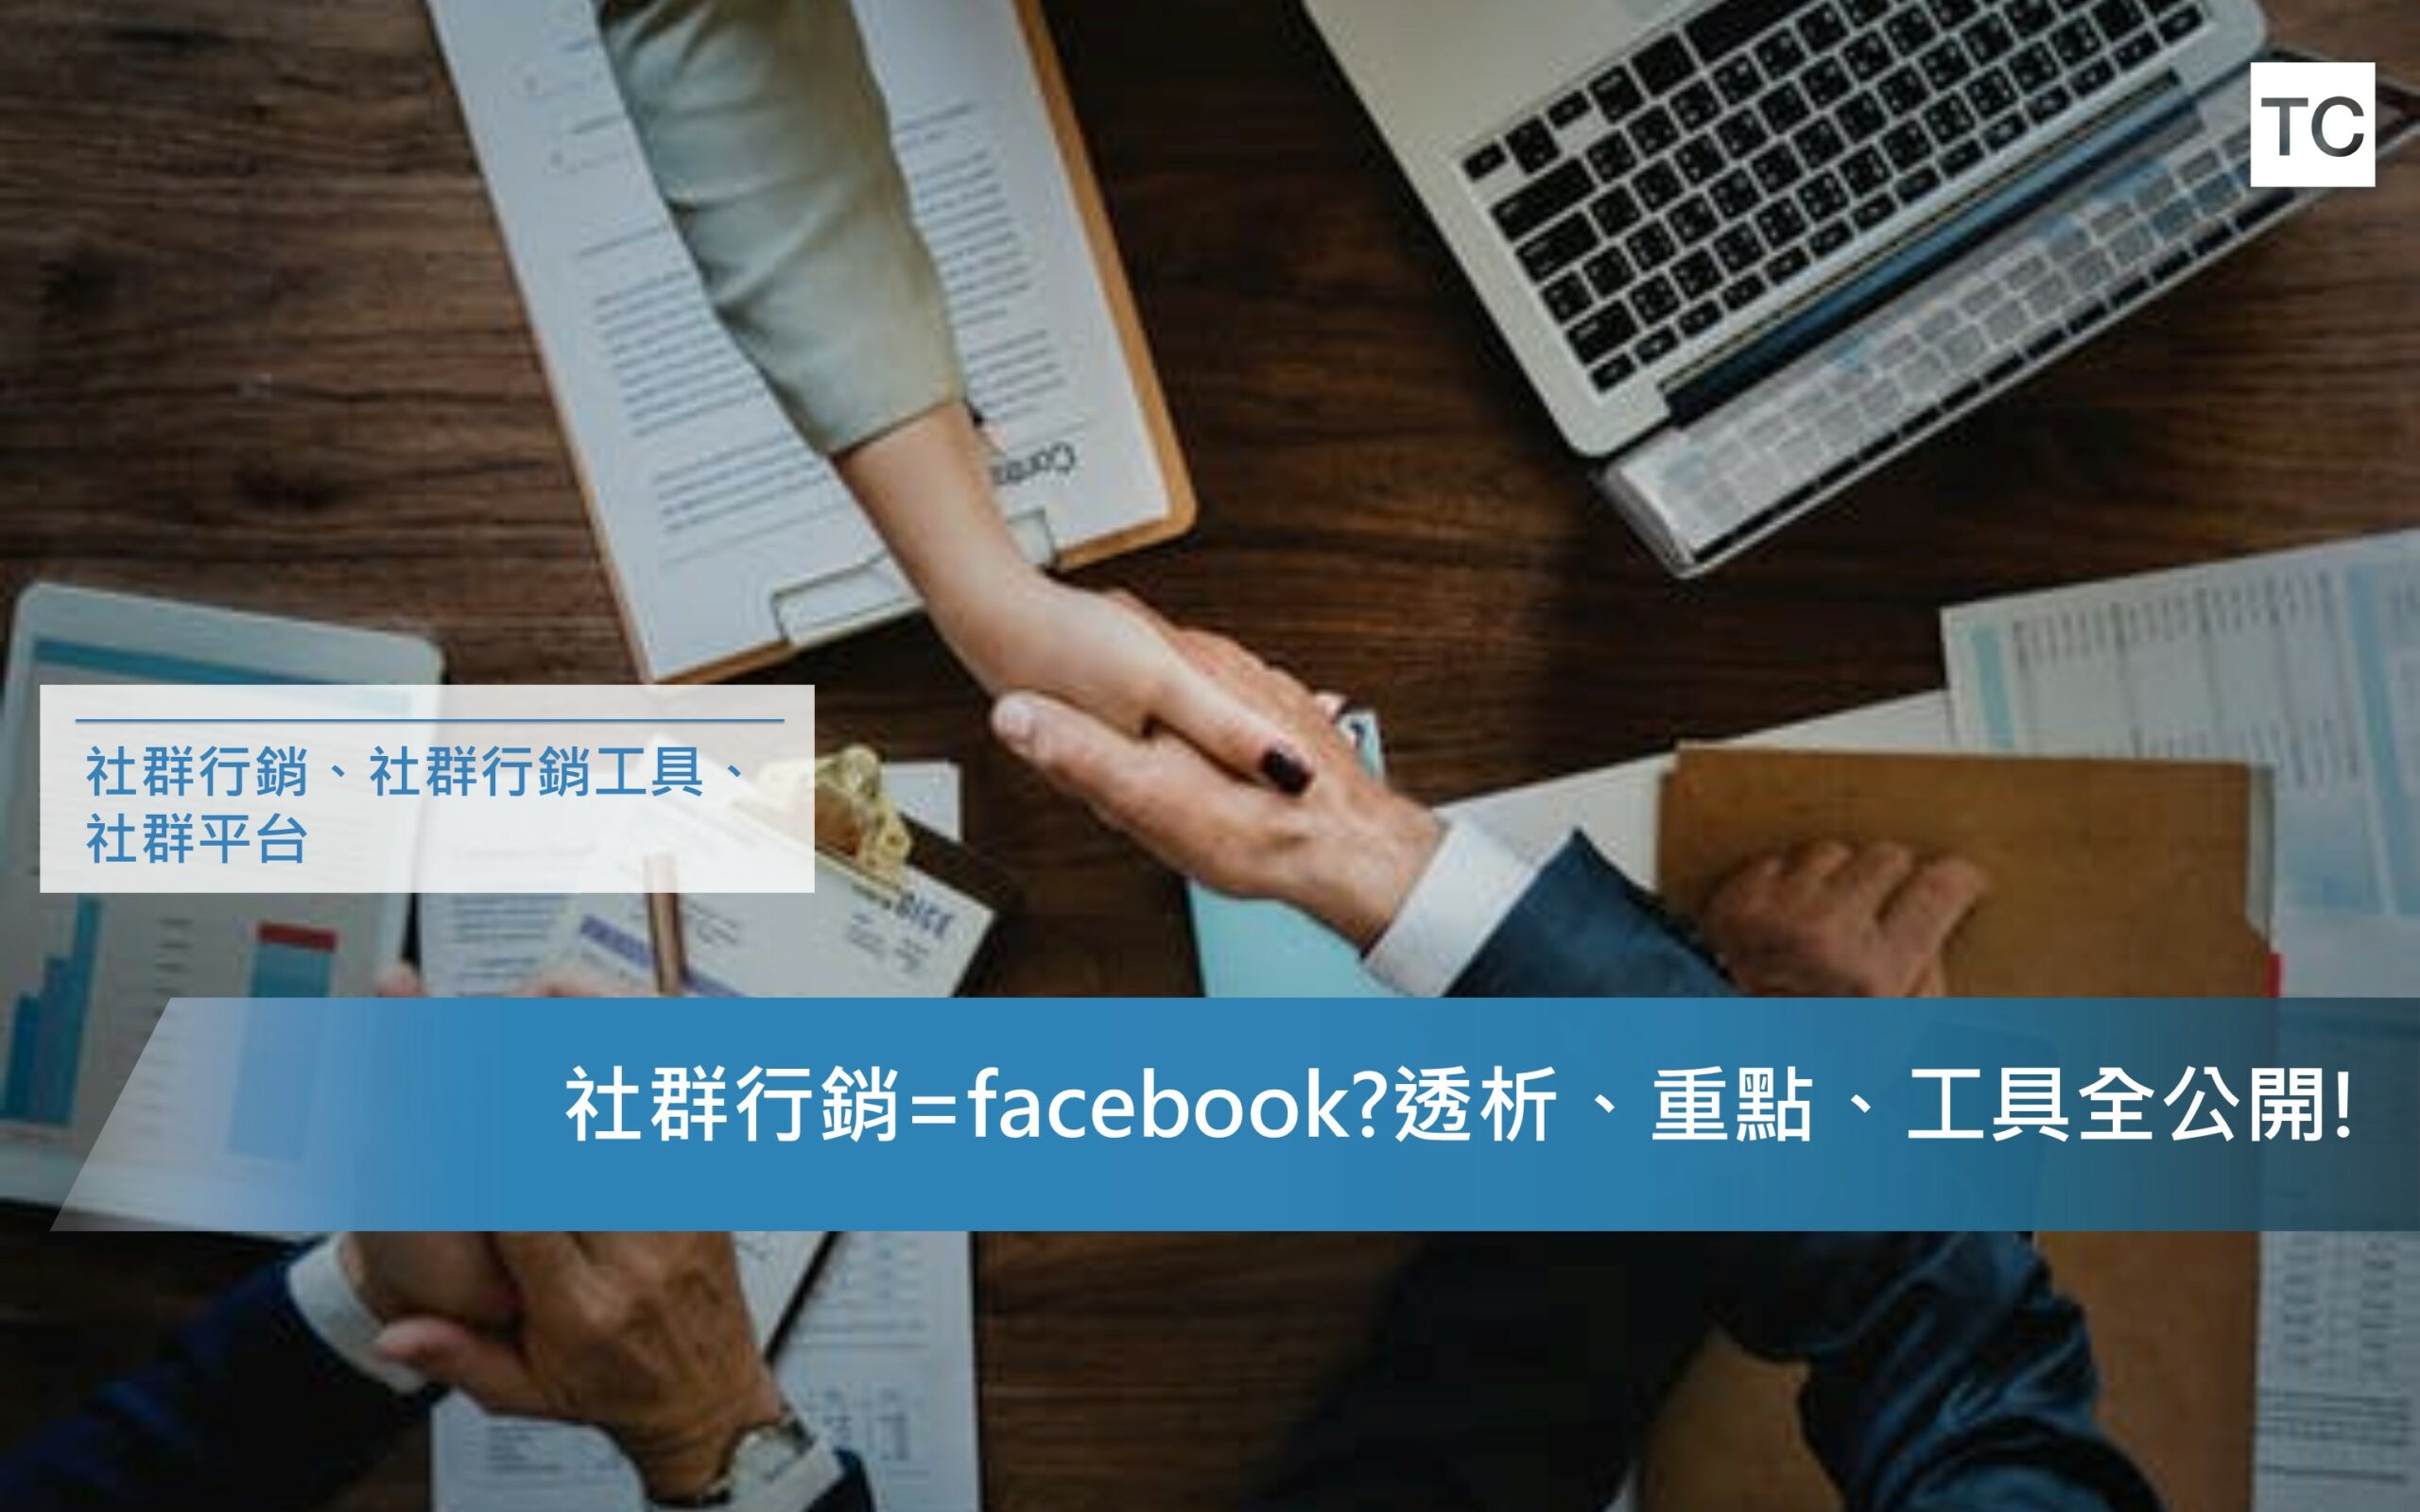 社群行銷=facebook經營?網路行銷分析、重點、工具全分享!